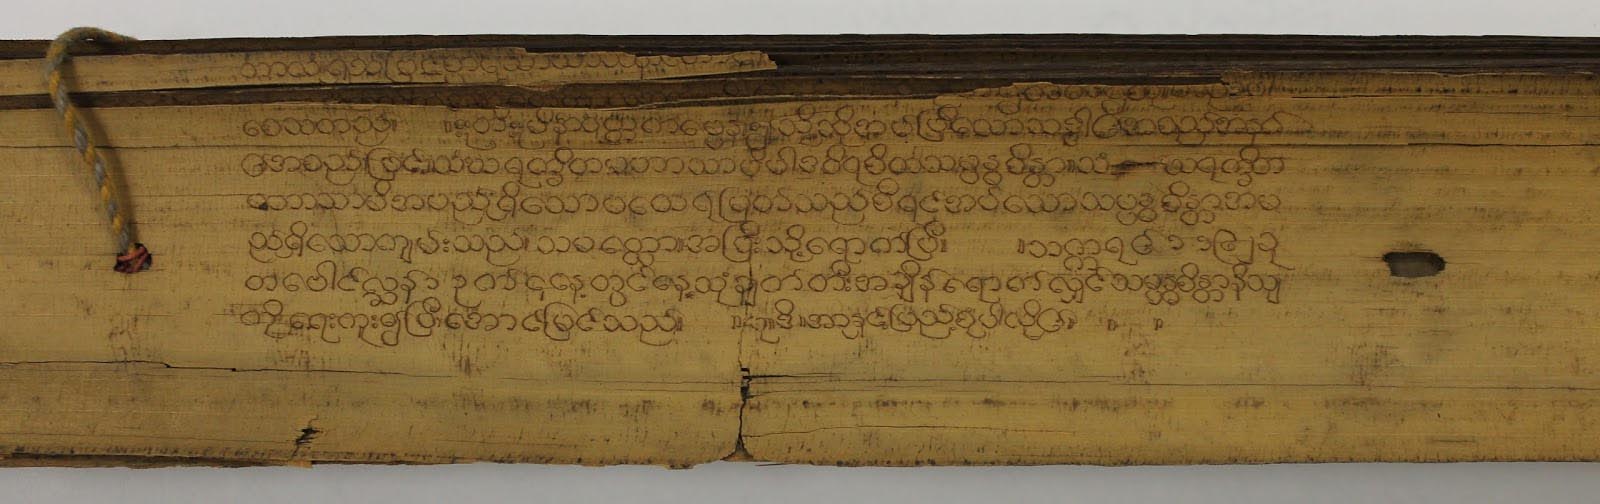 Another close up of Burmese text.